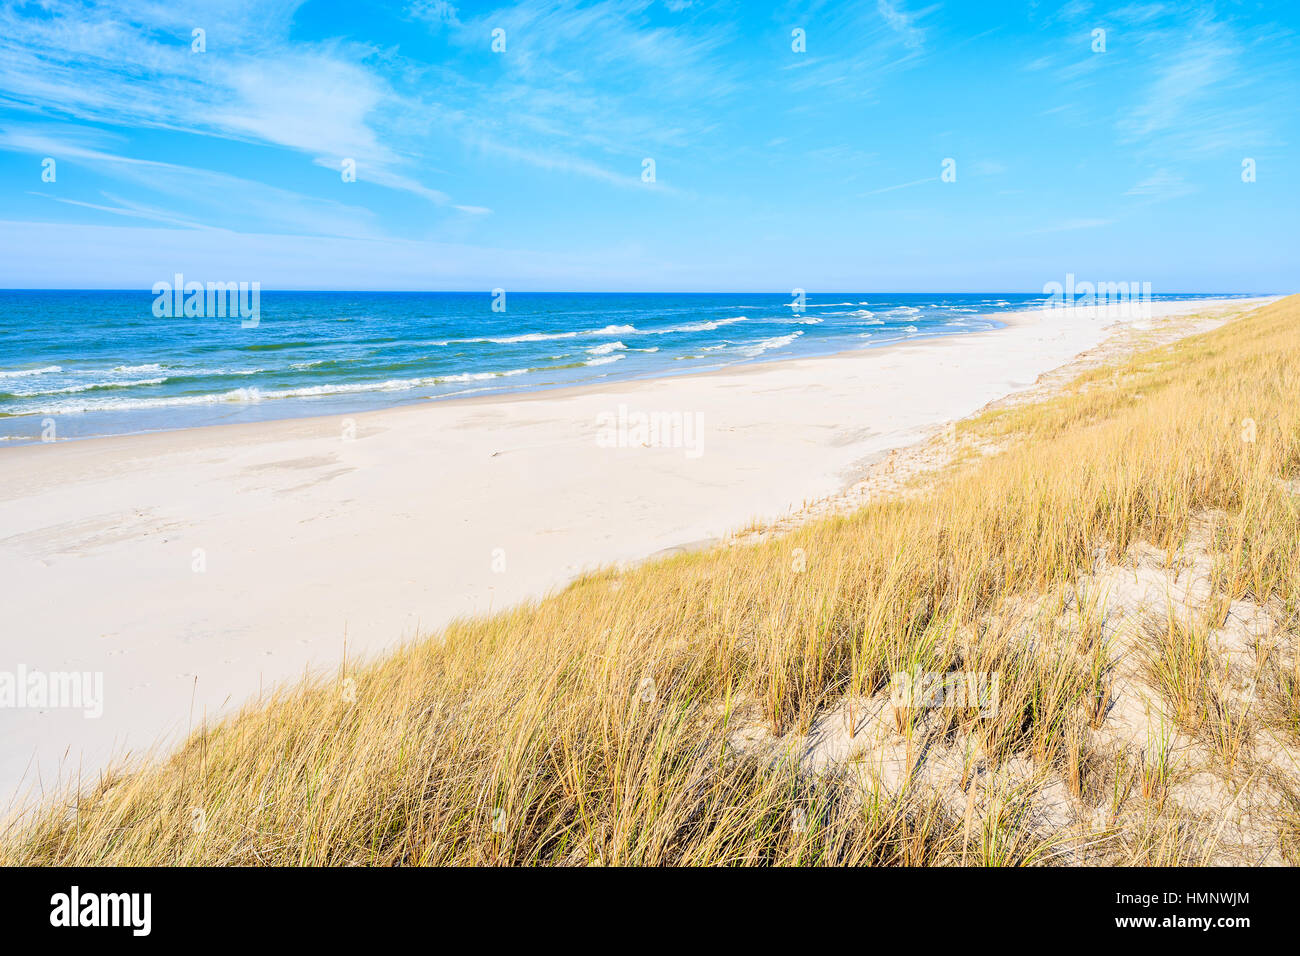 Le sable blanc et les dunes d'herbe sur Debki plage, mer Baltique, Pologne Banque D'Images